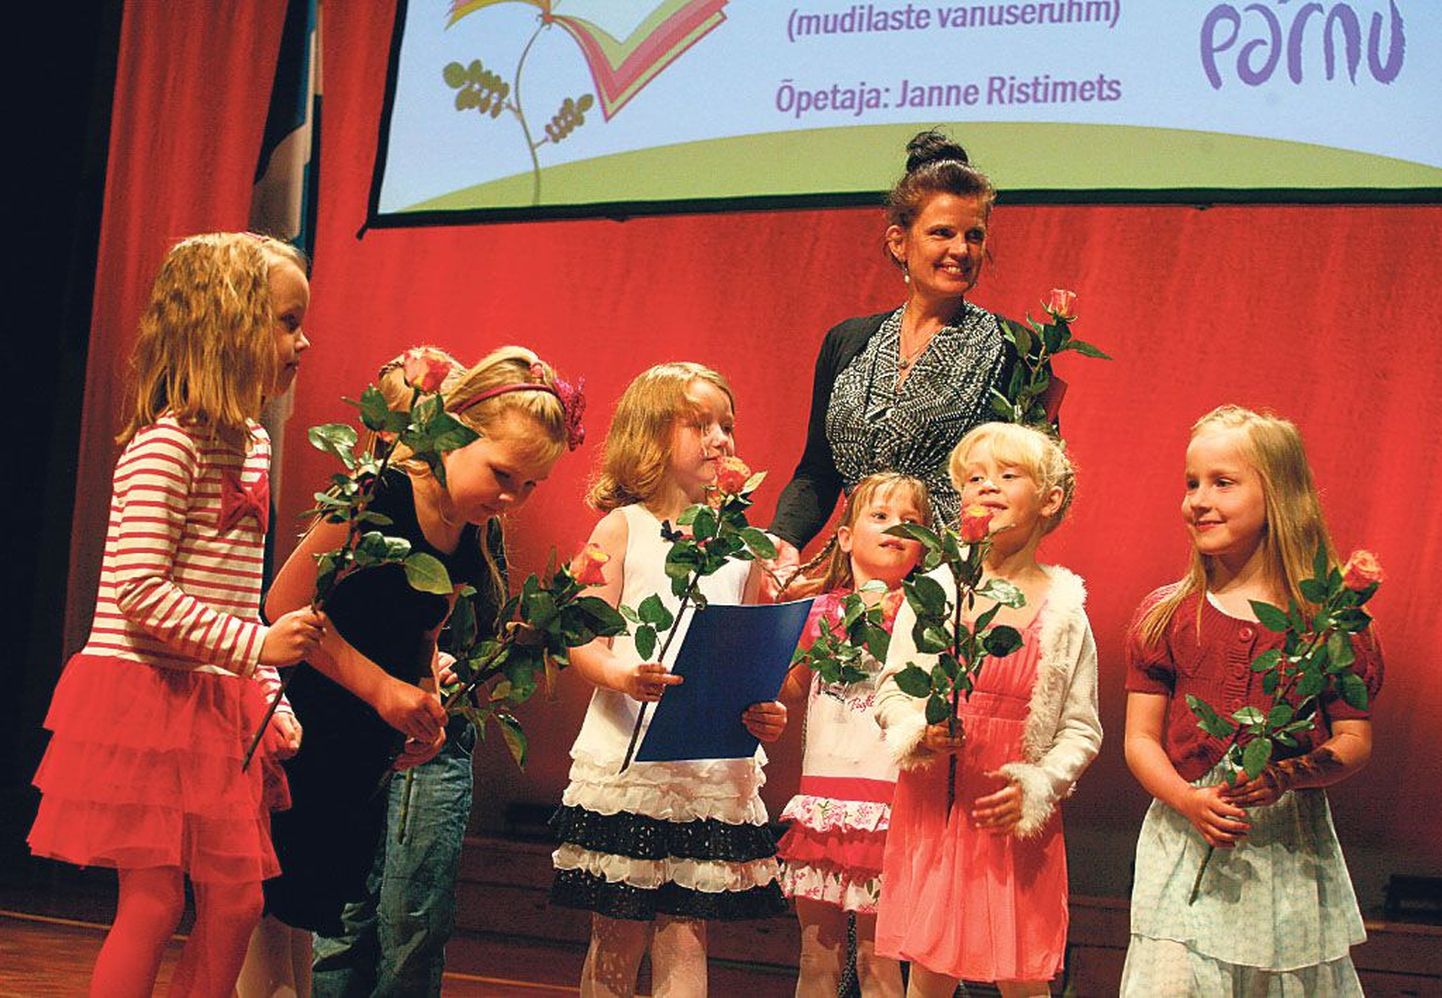 Tänukirjad said Pärnu Kunstide maja lastetantsurühma tüdrukud ja nende juhendaja Janne Ristimets, kes võitsid konkursi “Koolitants 2012” mudilaste vanuserühmas.